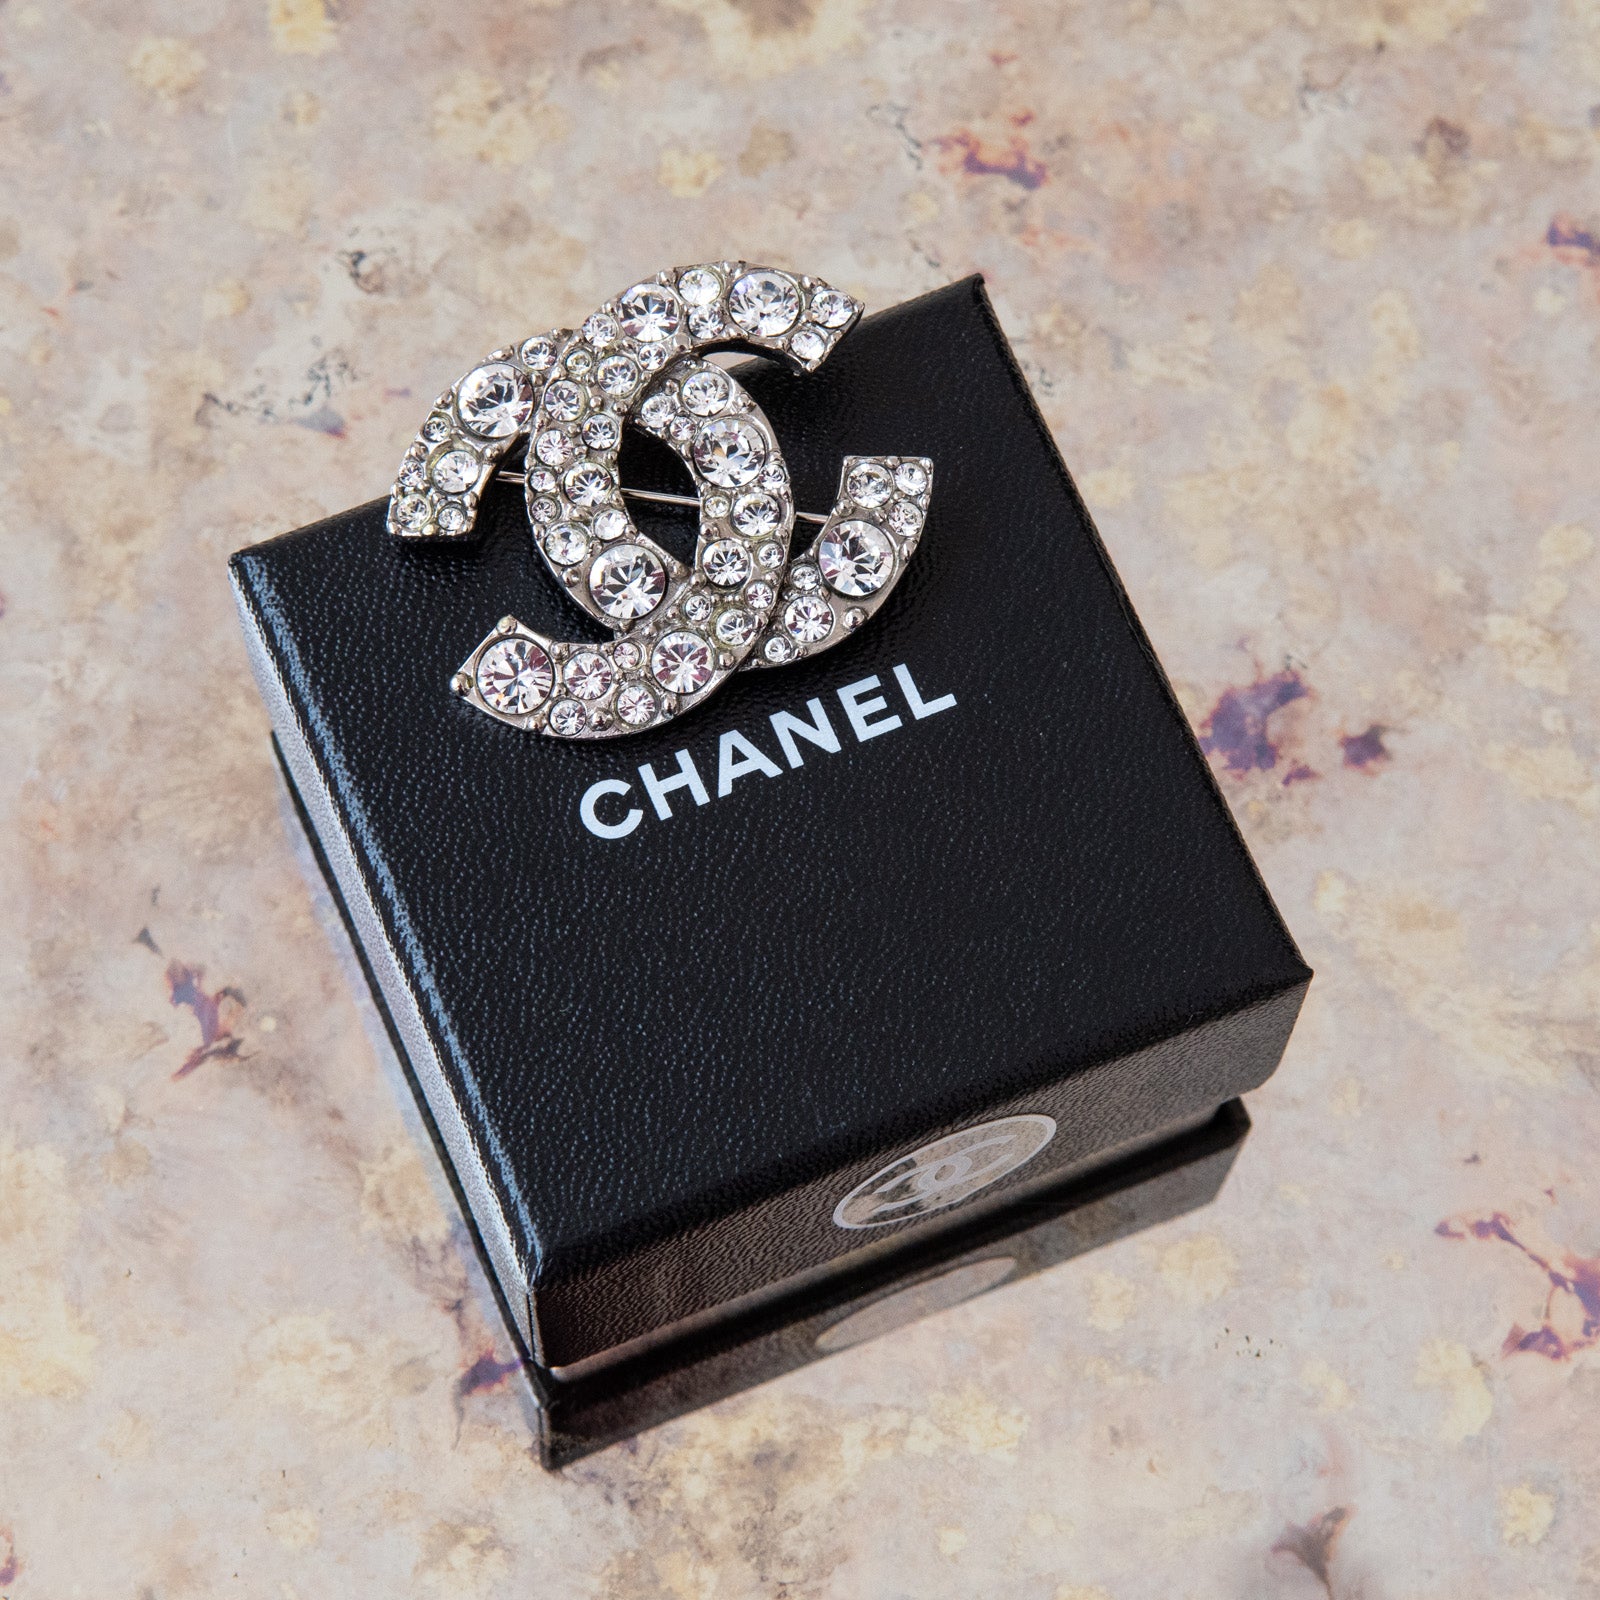 Chanel Diamante Brooch - Image 5 of 6